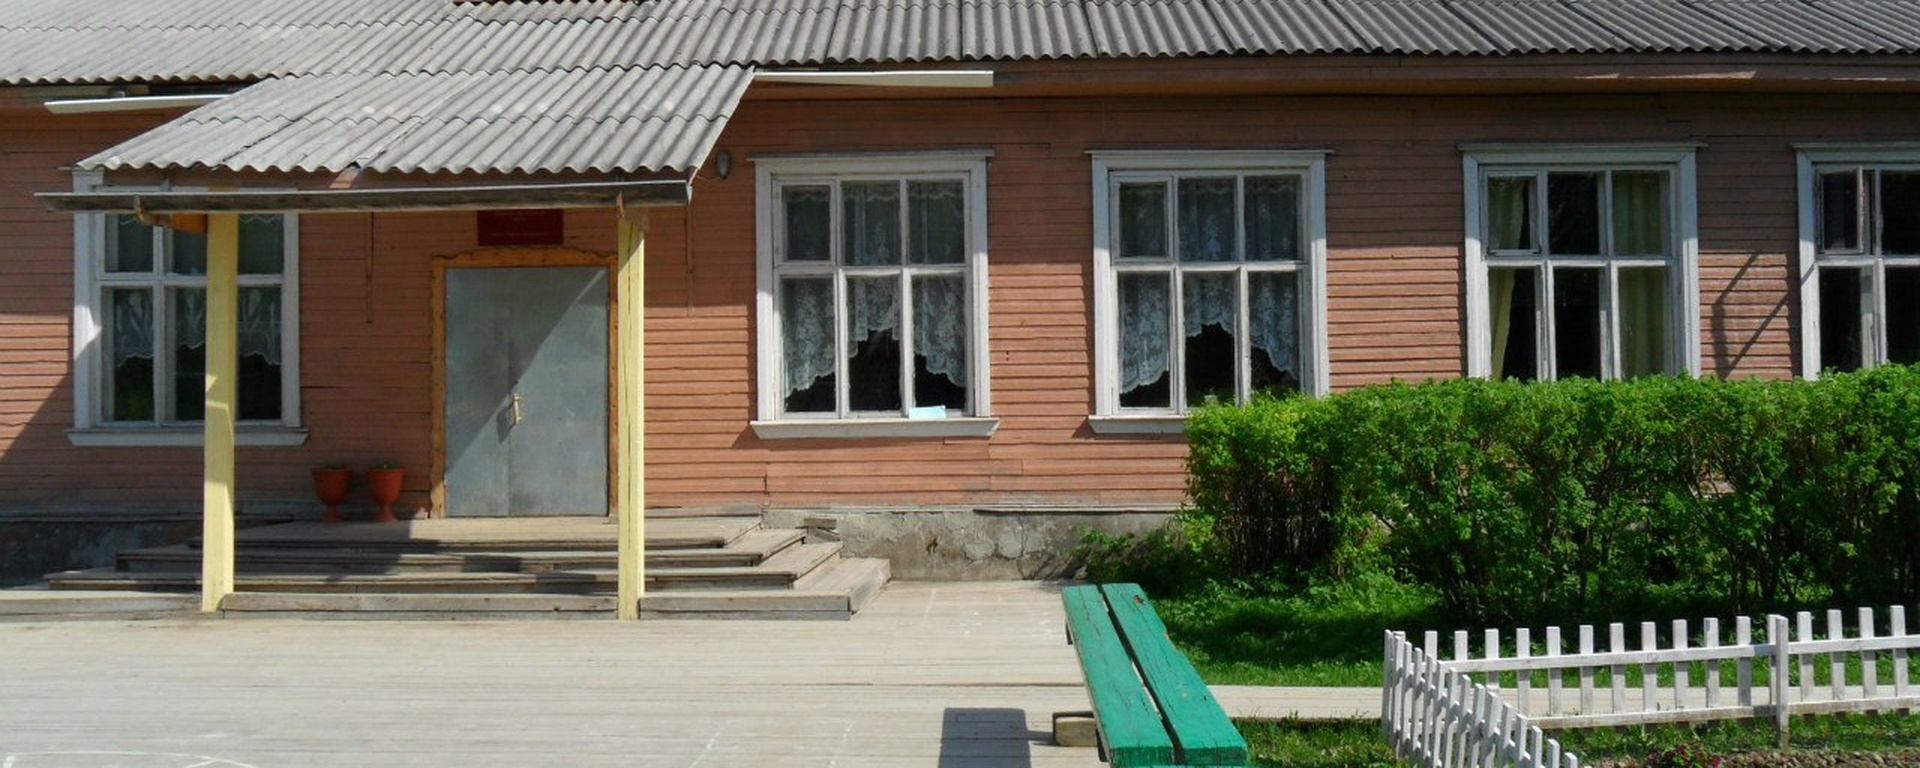 Министр образования Карелии прокомментировал слухи о закрытии школы в отдаленном поселке